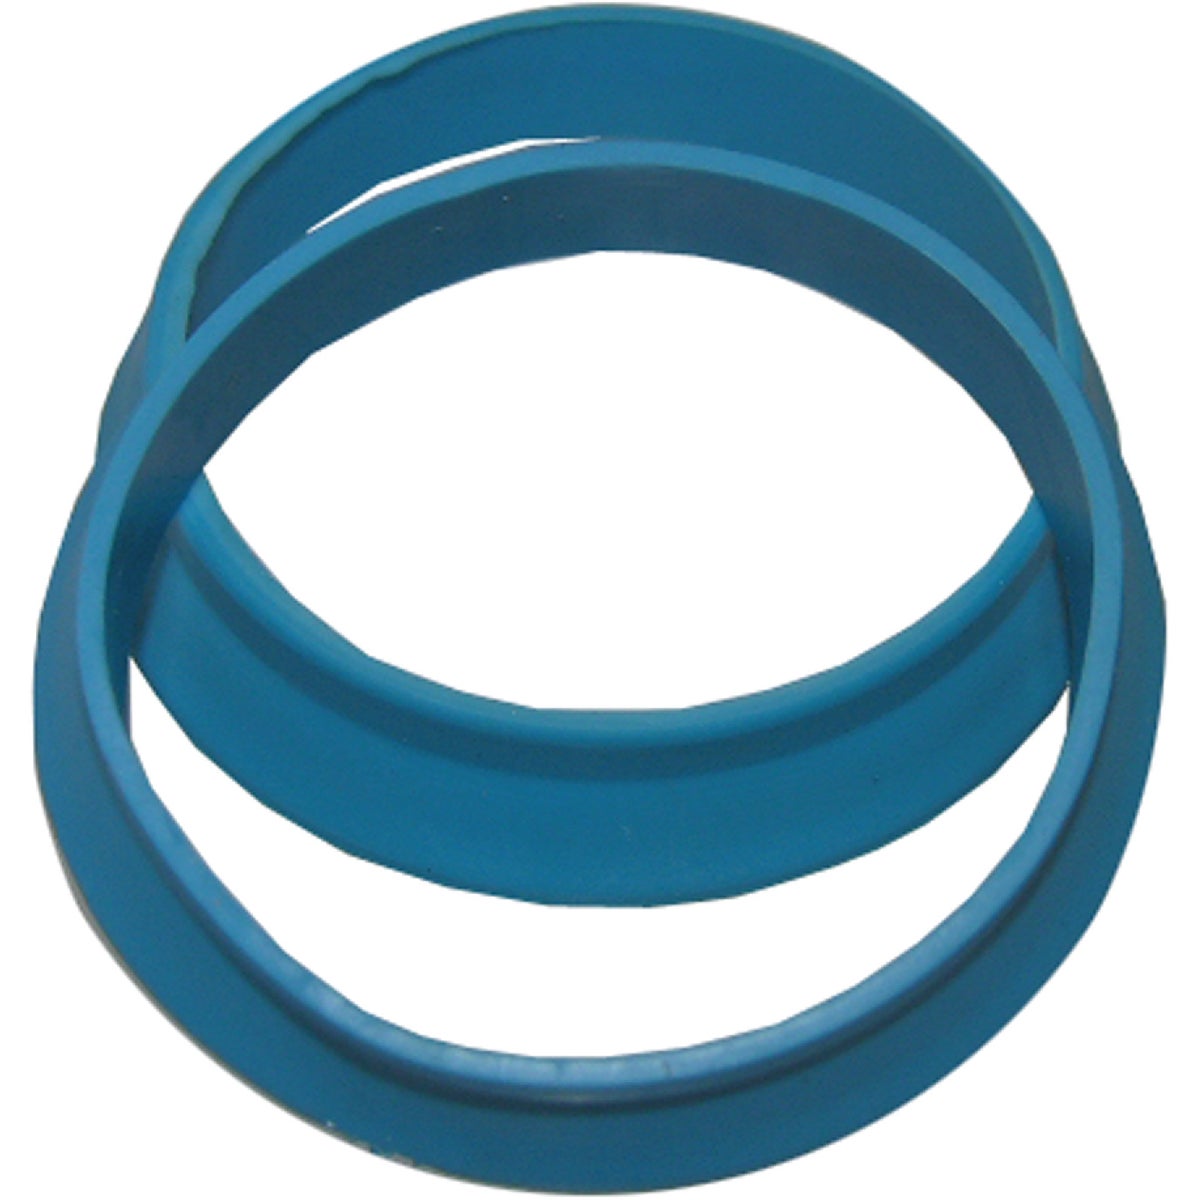 Lasco 1-1/2 In. Blue Vinyl Slip Joint Washer (2-Pack)